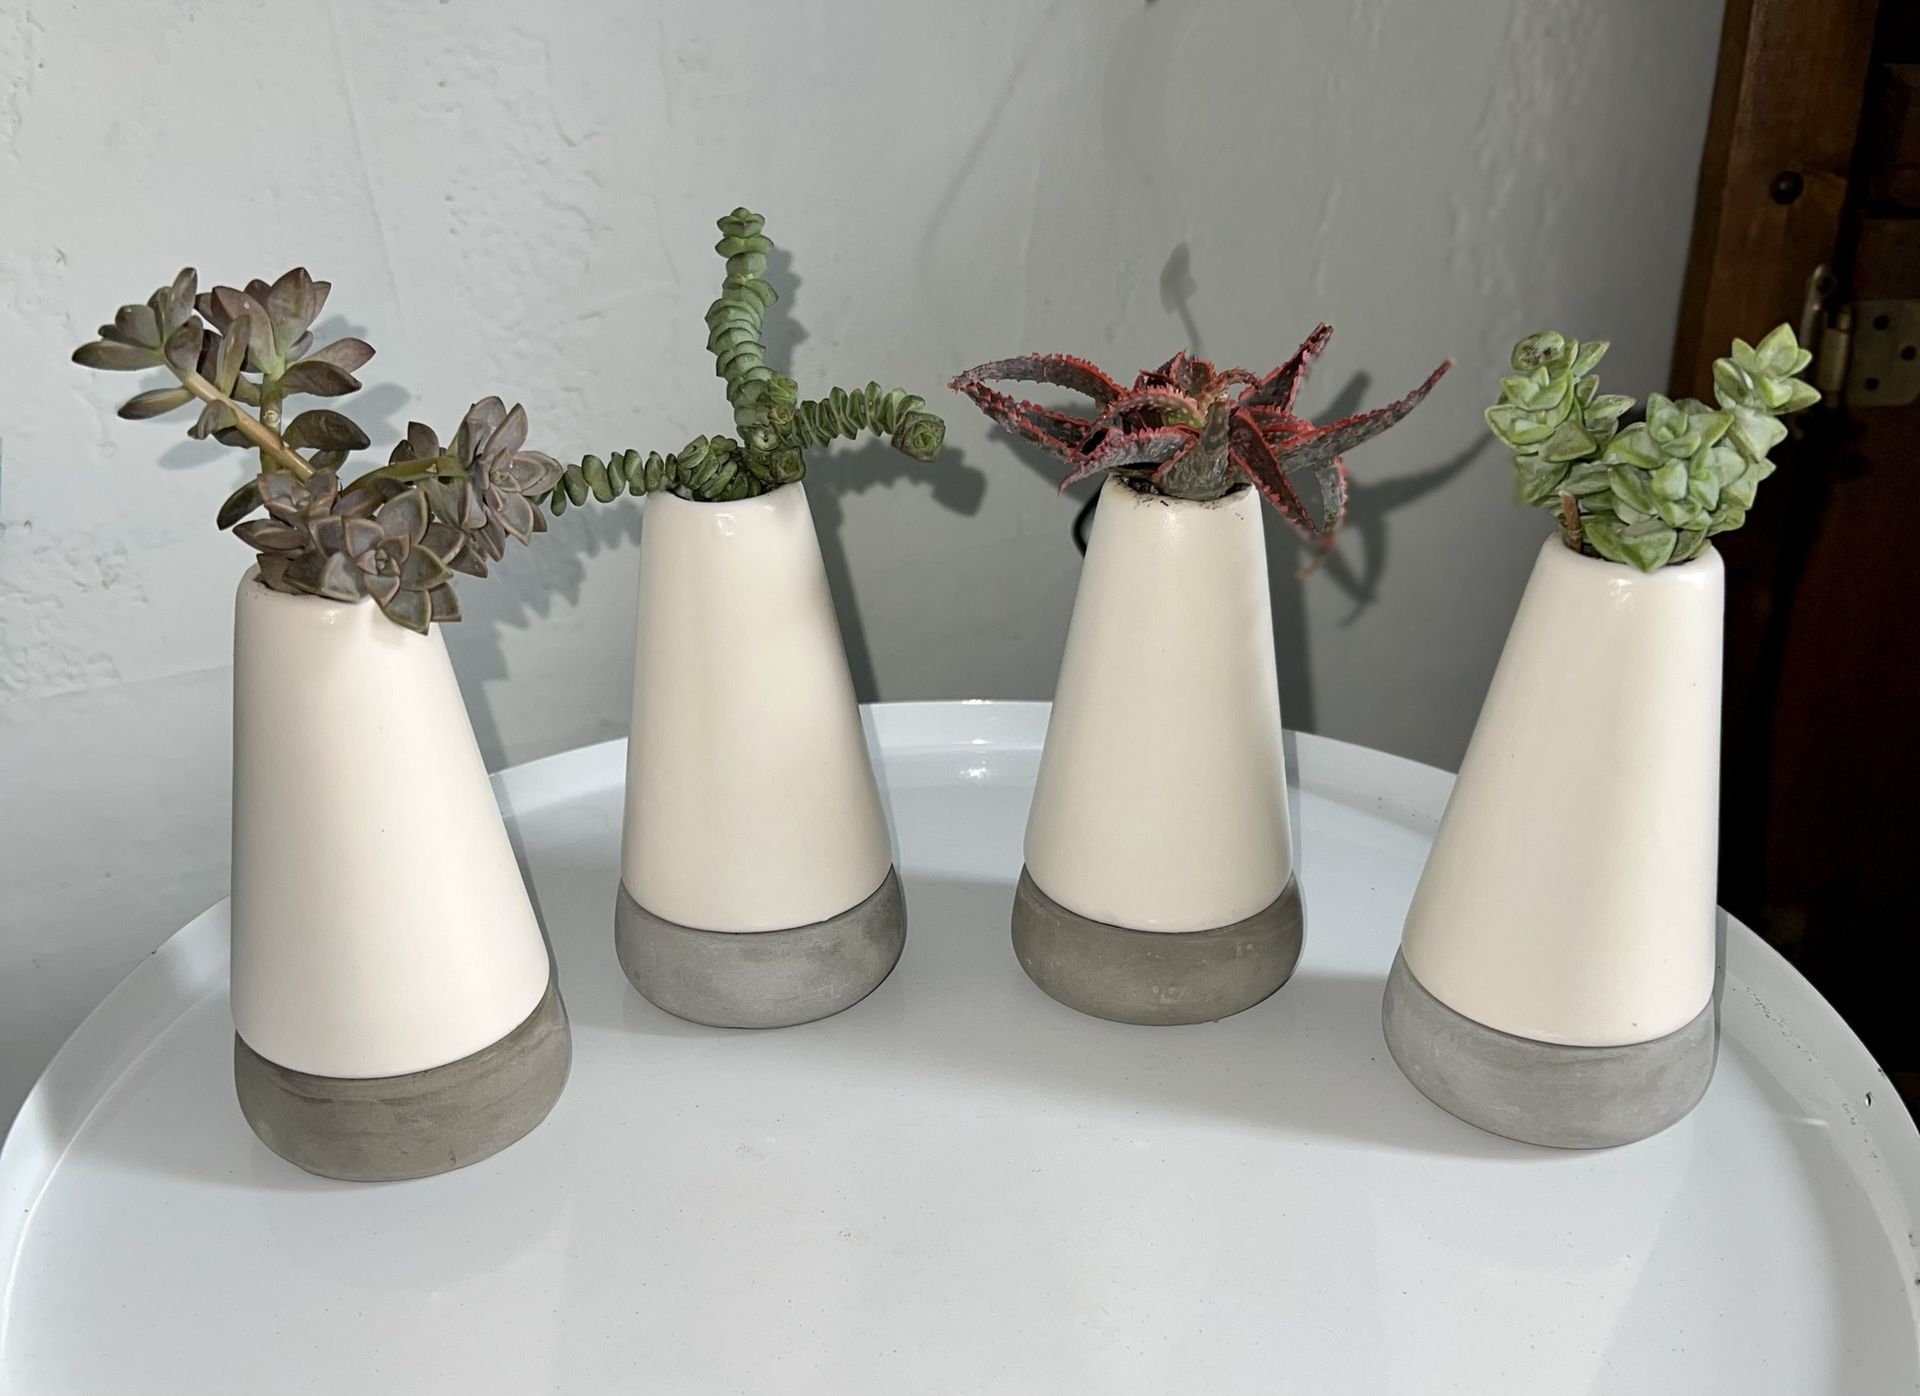 Succulent Vase’s 